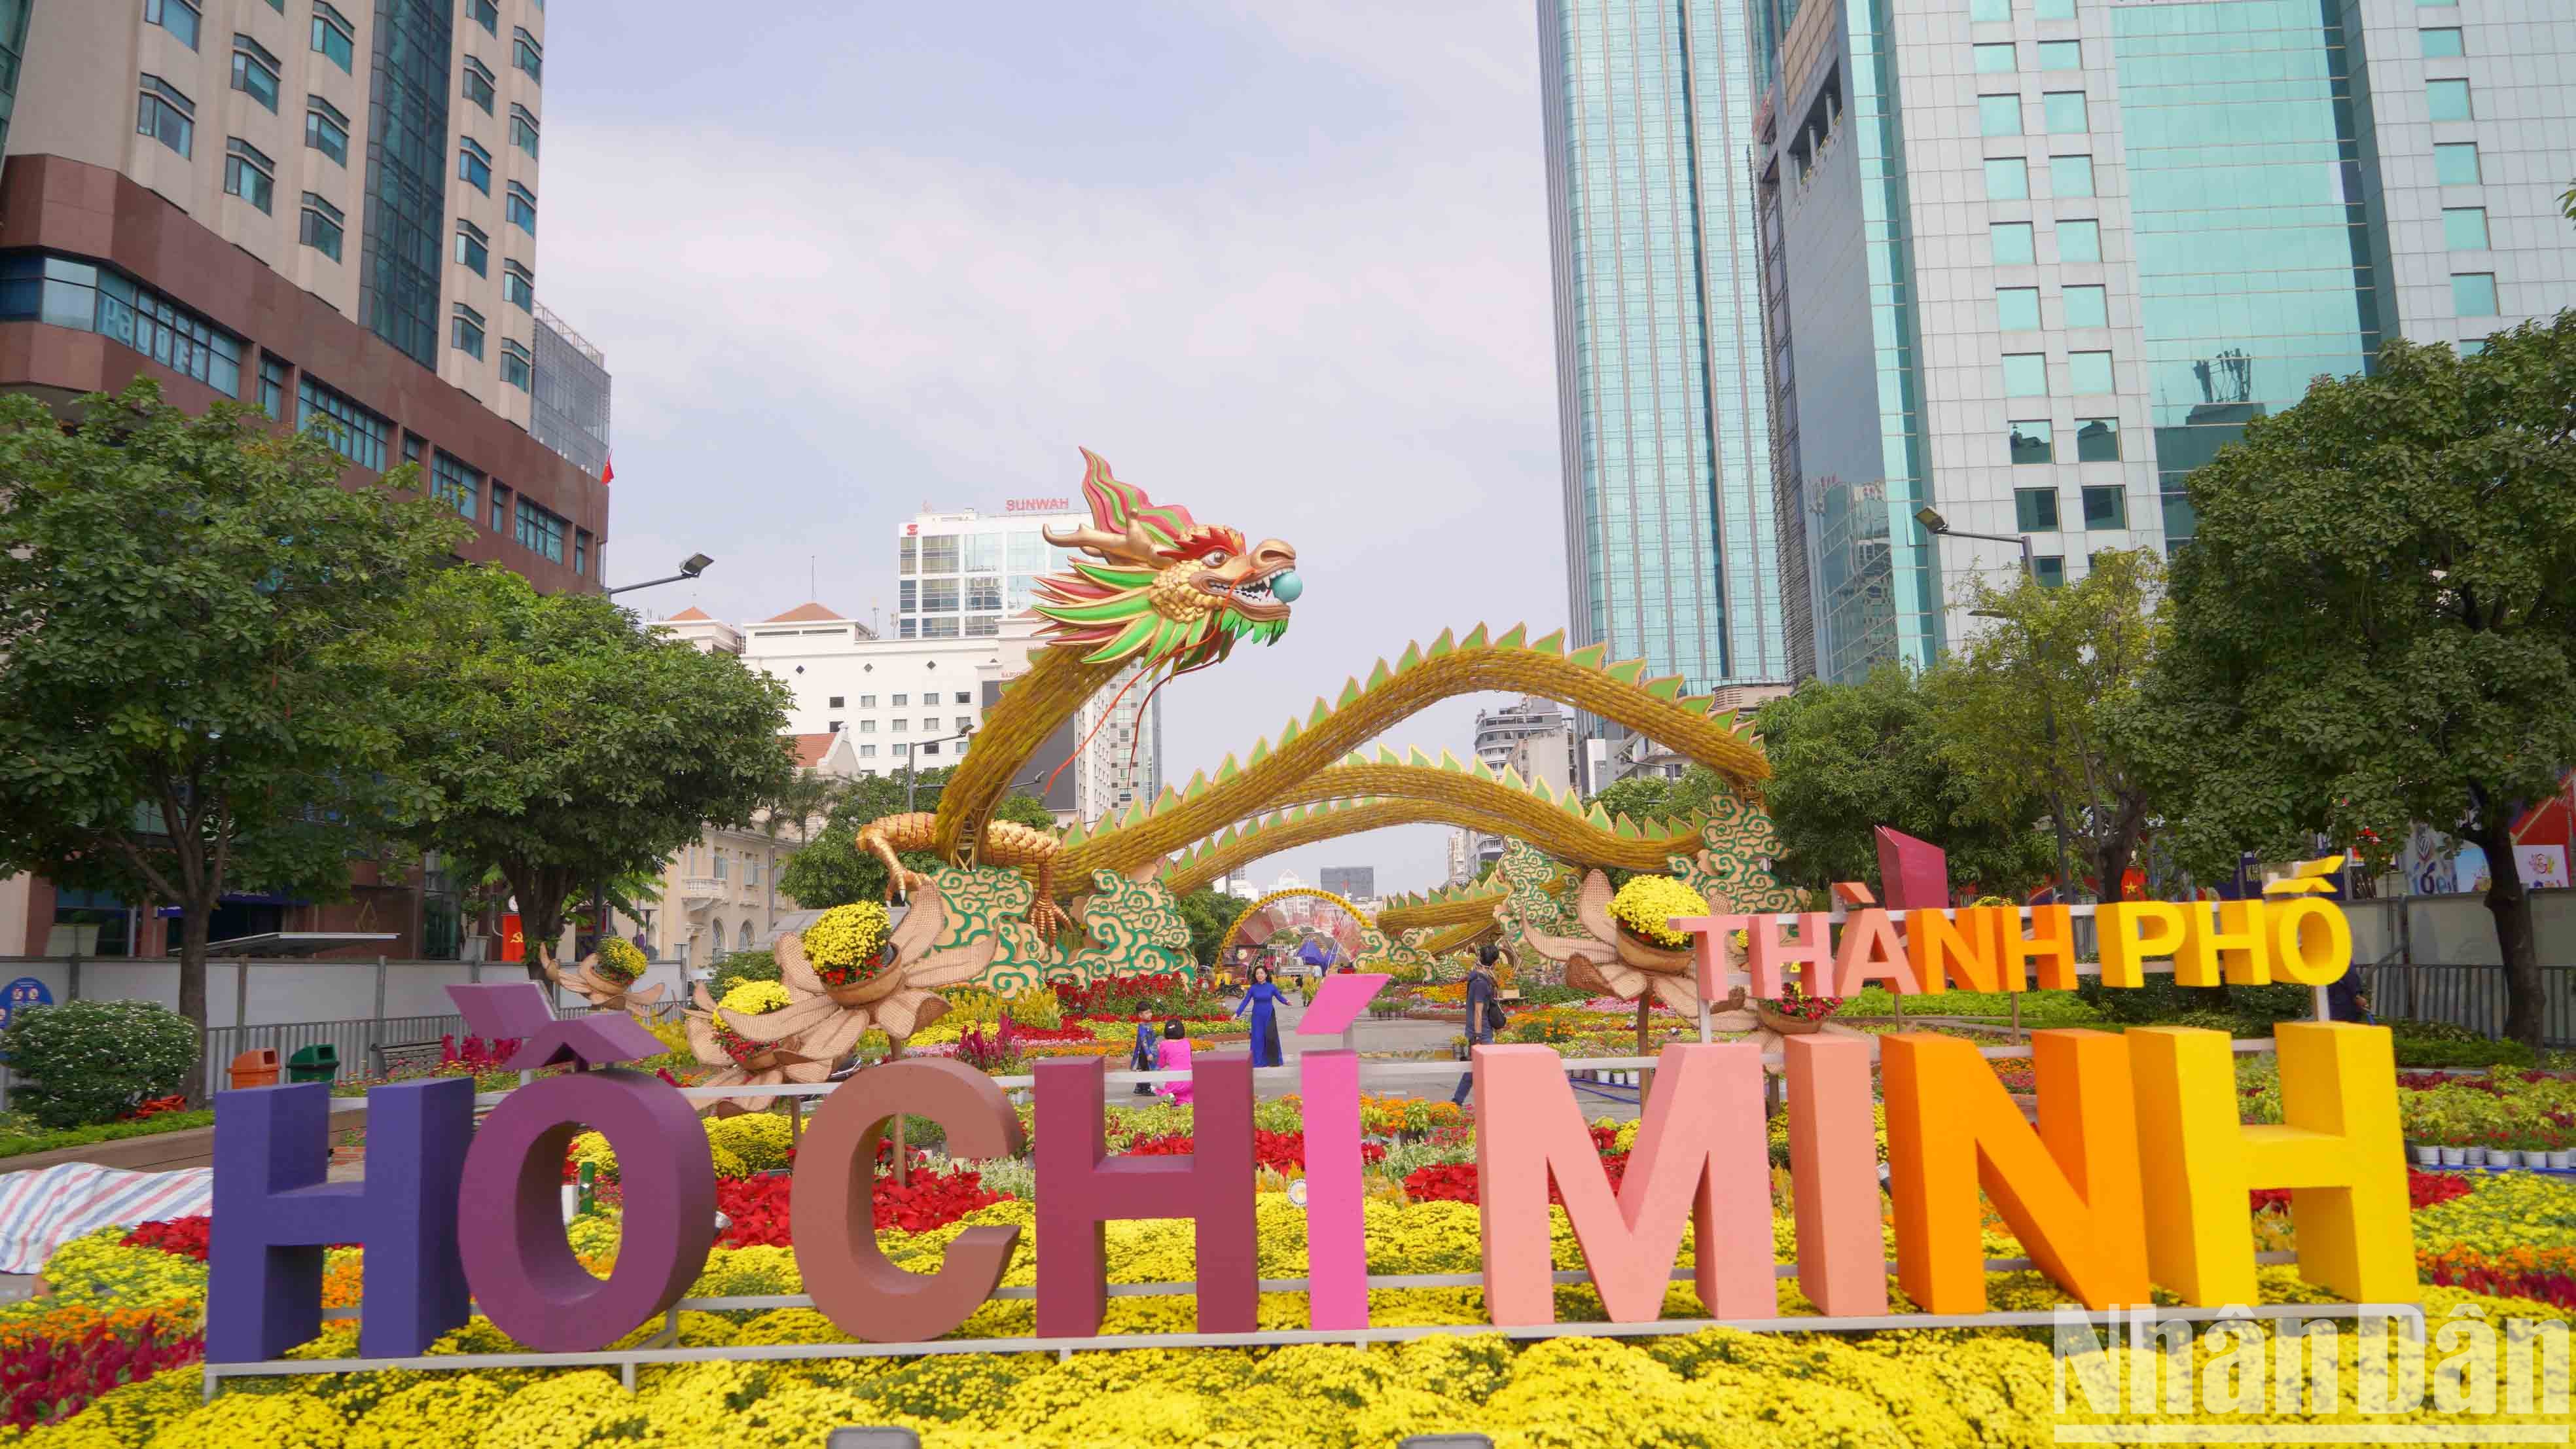 Sáng 6/2 (27 tháng Chạp), việc thi công đường hoa Nguyễn Huệ (Thành phố Hồ Chí Minh) cơ bản đã hoàn thành, sẵn sàng đón du khách đến tham quan thưởng ngoạn từ 19 giờ ngày 28 tháng Chạp Quý Mão.